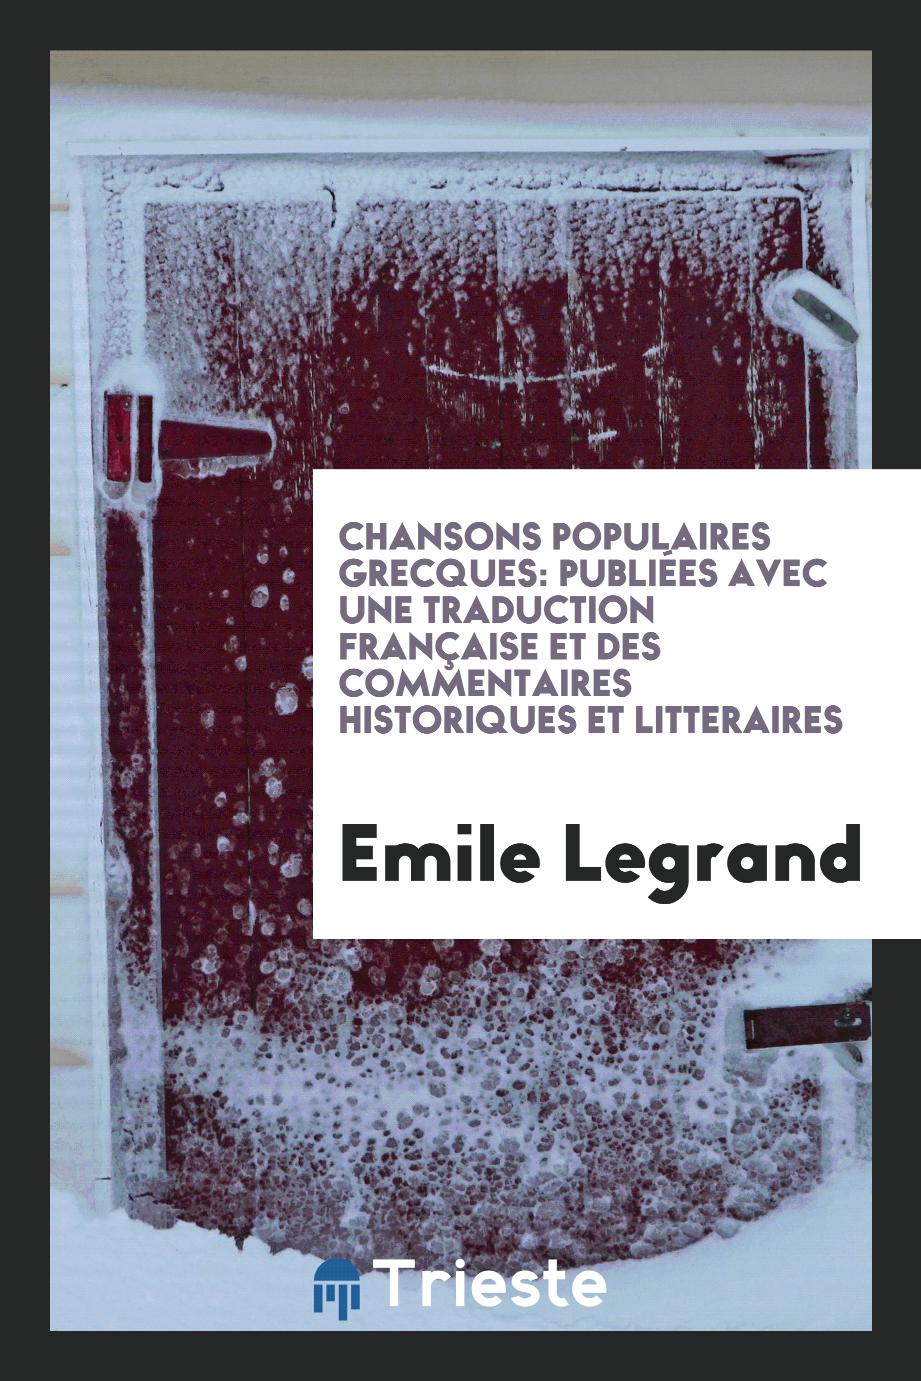 Chansons Populaires Grecques: Publiées avec une Traduction Française et des Commentaires Historiques et Litteraires